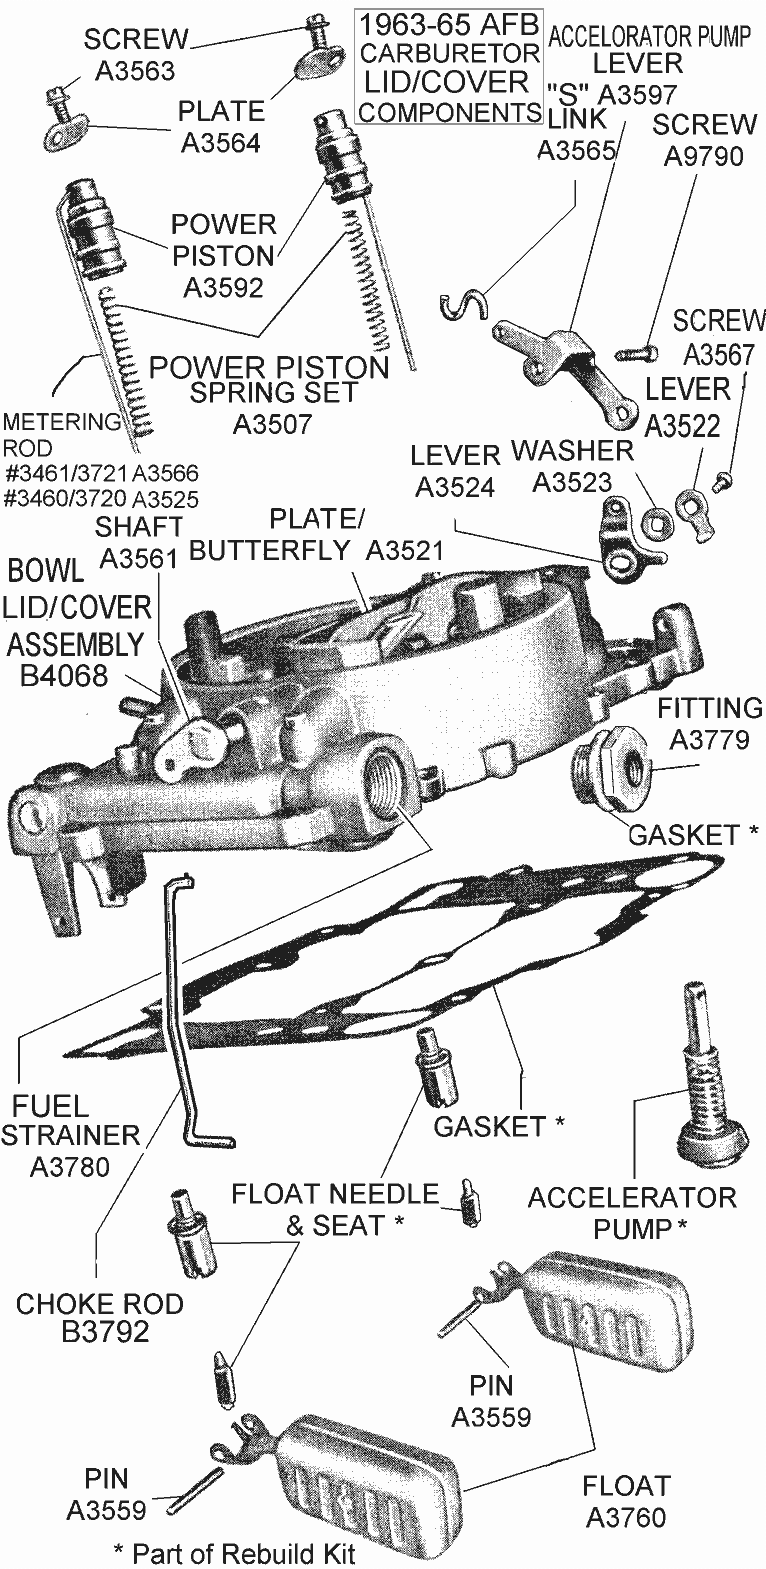 Carter AFB Carburetor Components